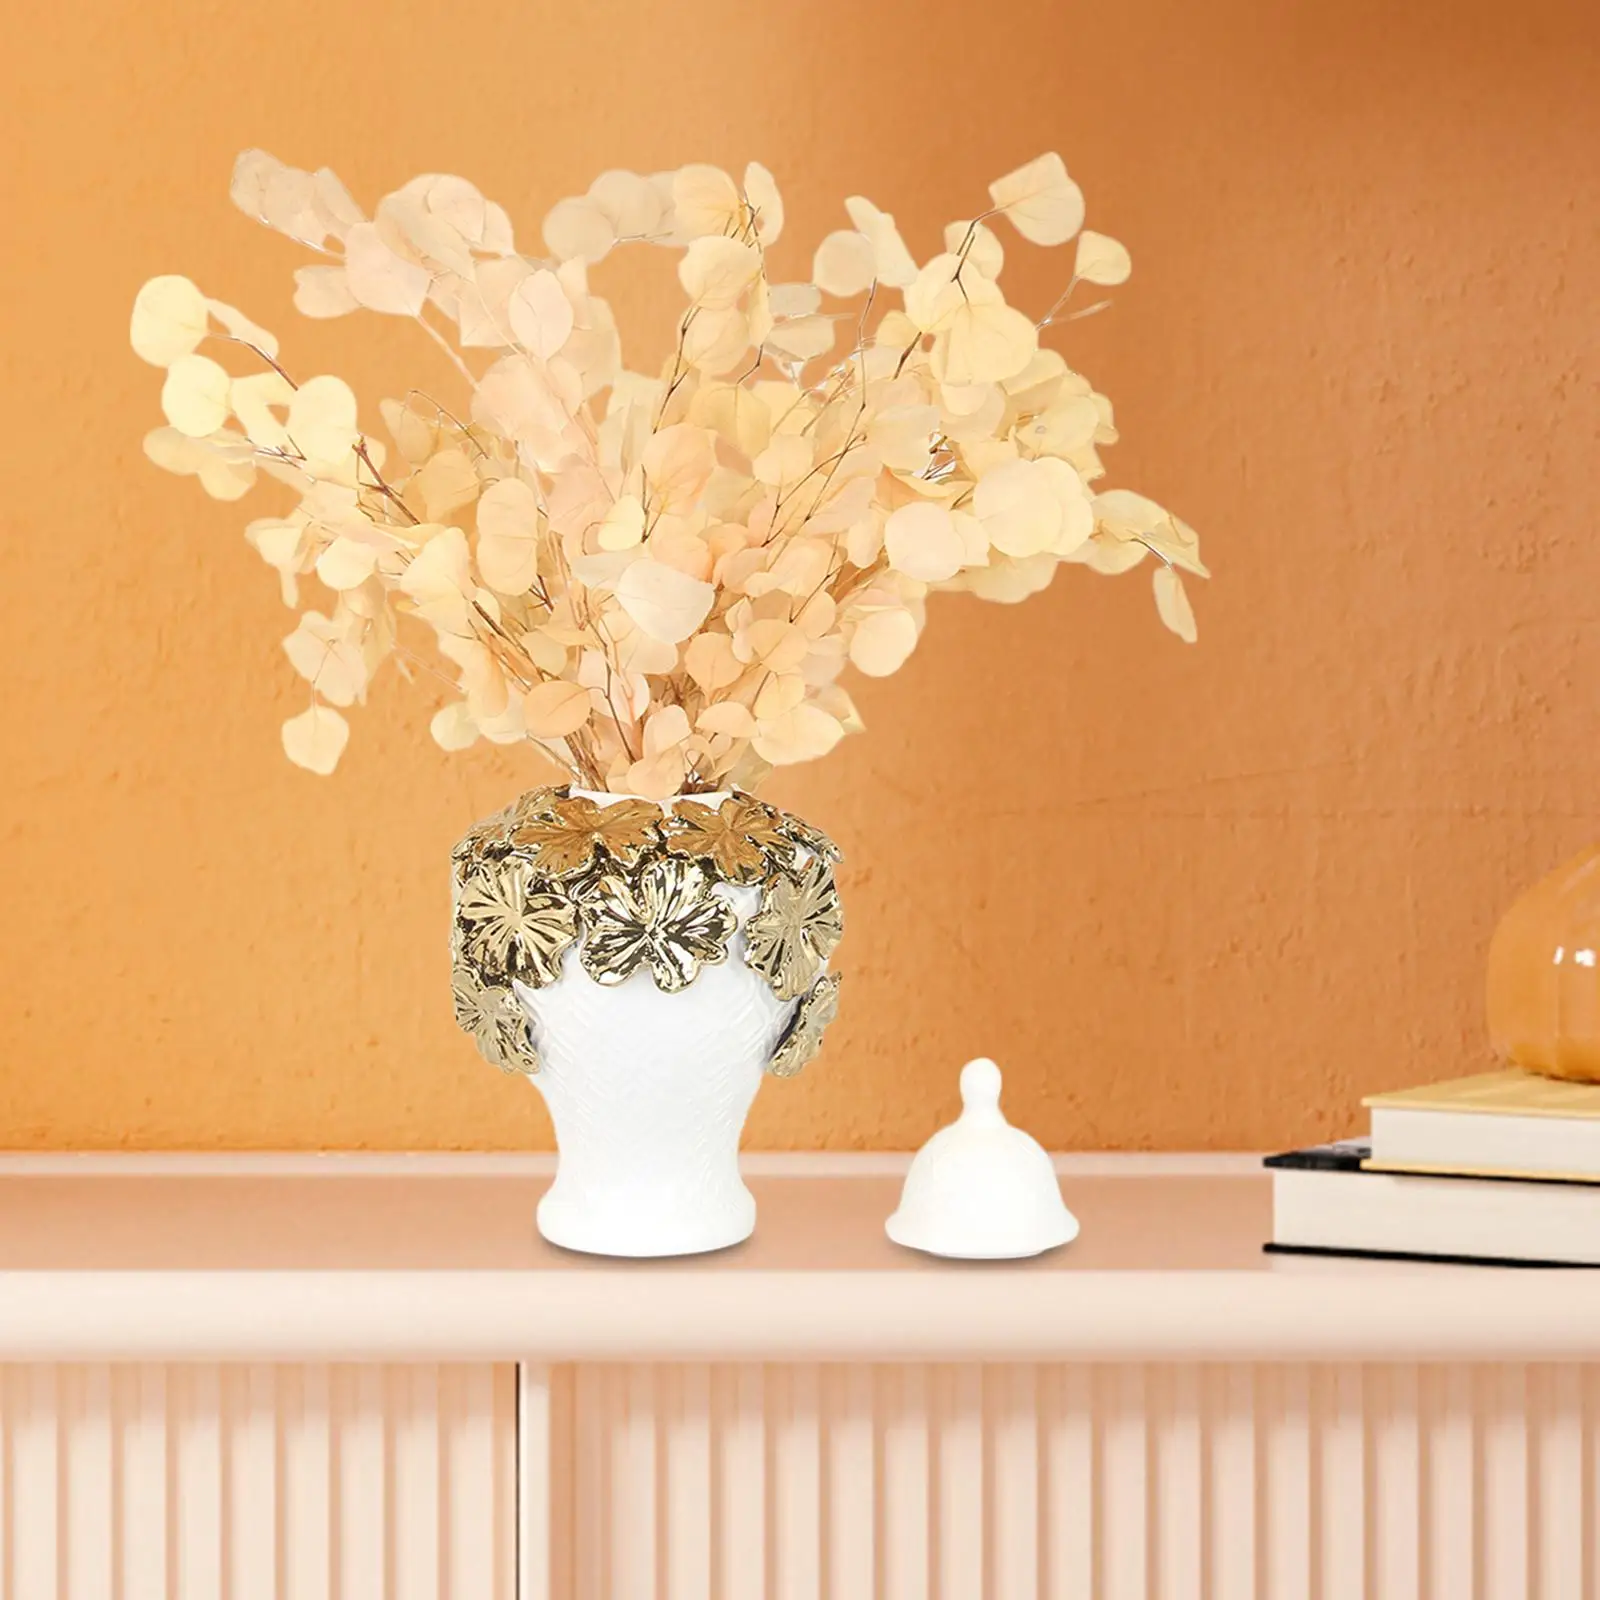 Ceramic Flower Vases Gifts Display Floral Arrangement Decoration Porcelain Ginger Jars for Wedding Fireplace Bedroom Home